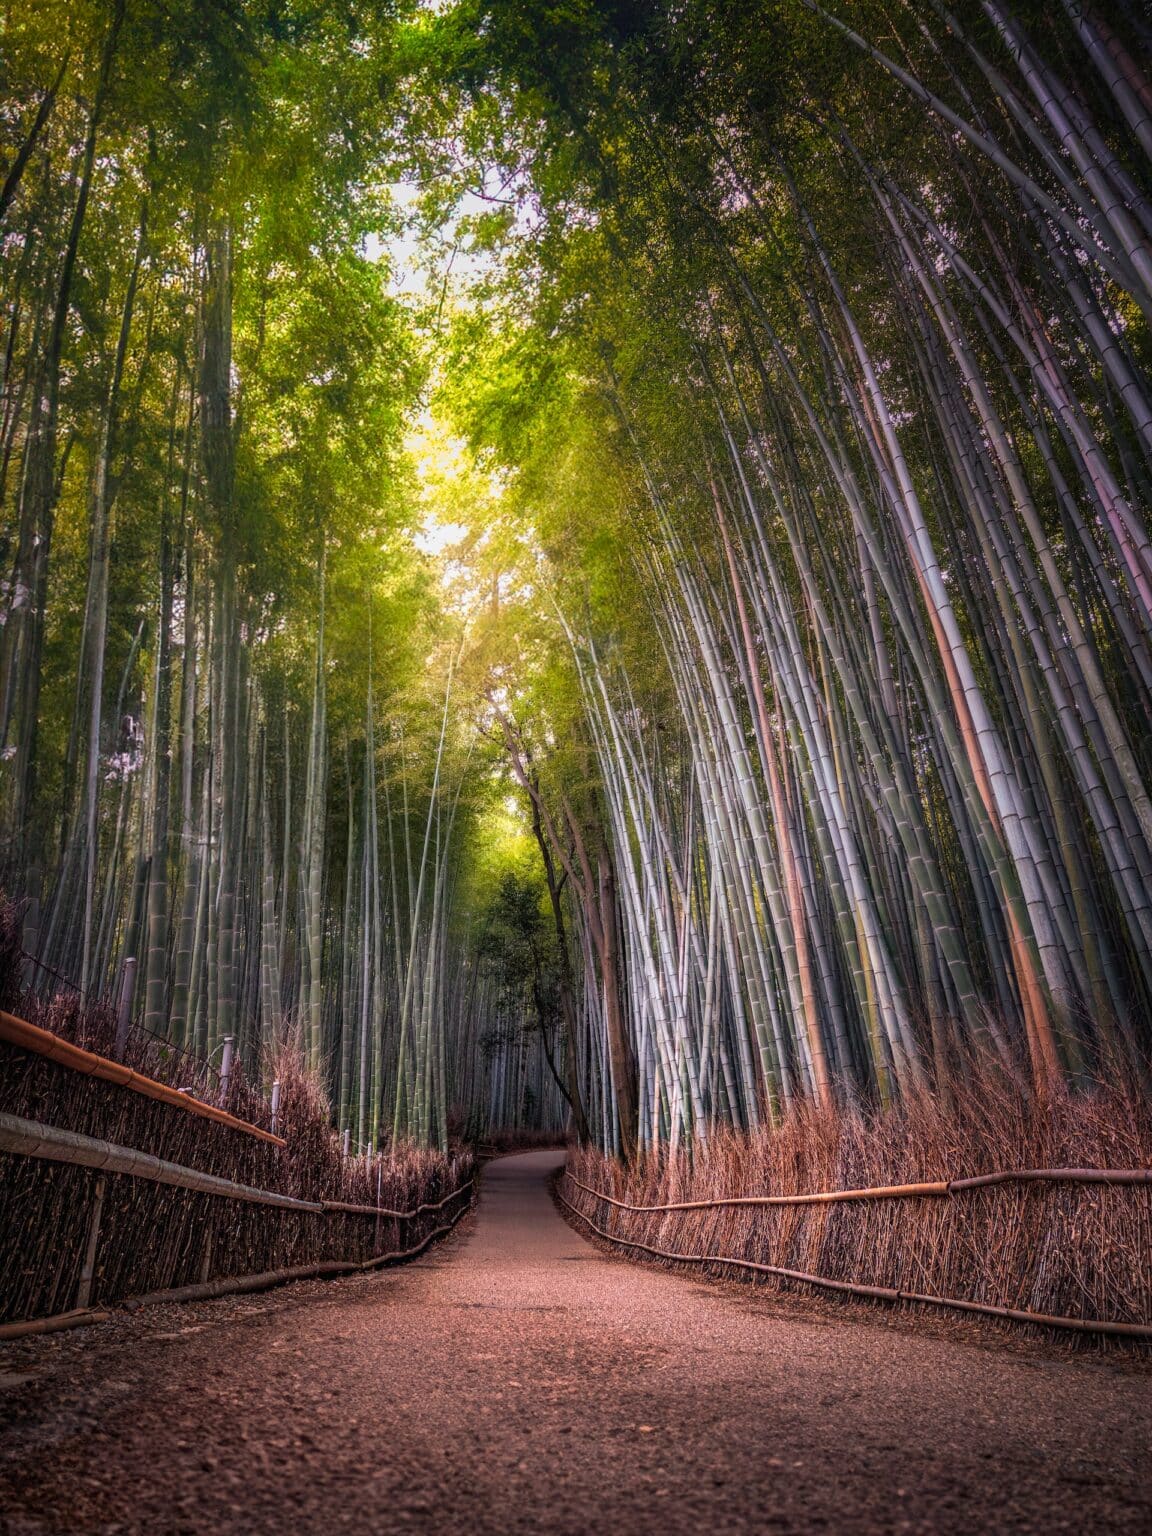 Bamboo Groves in Arashiyama